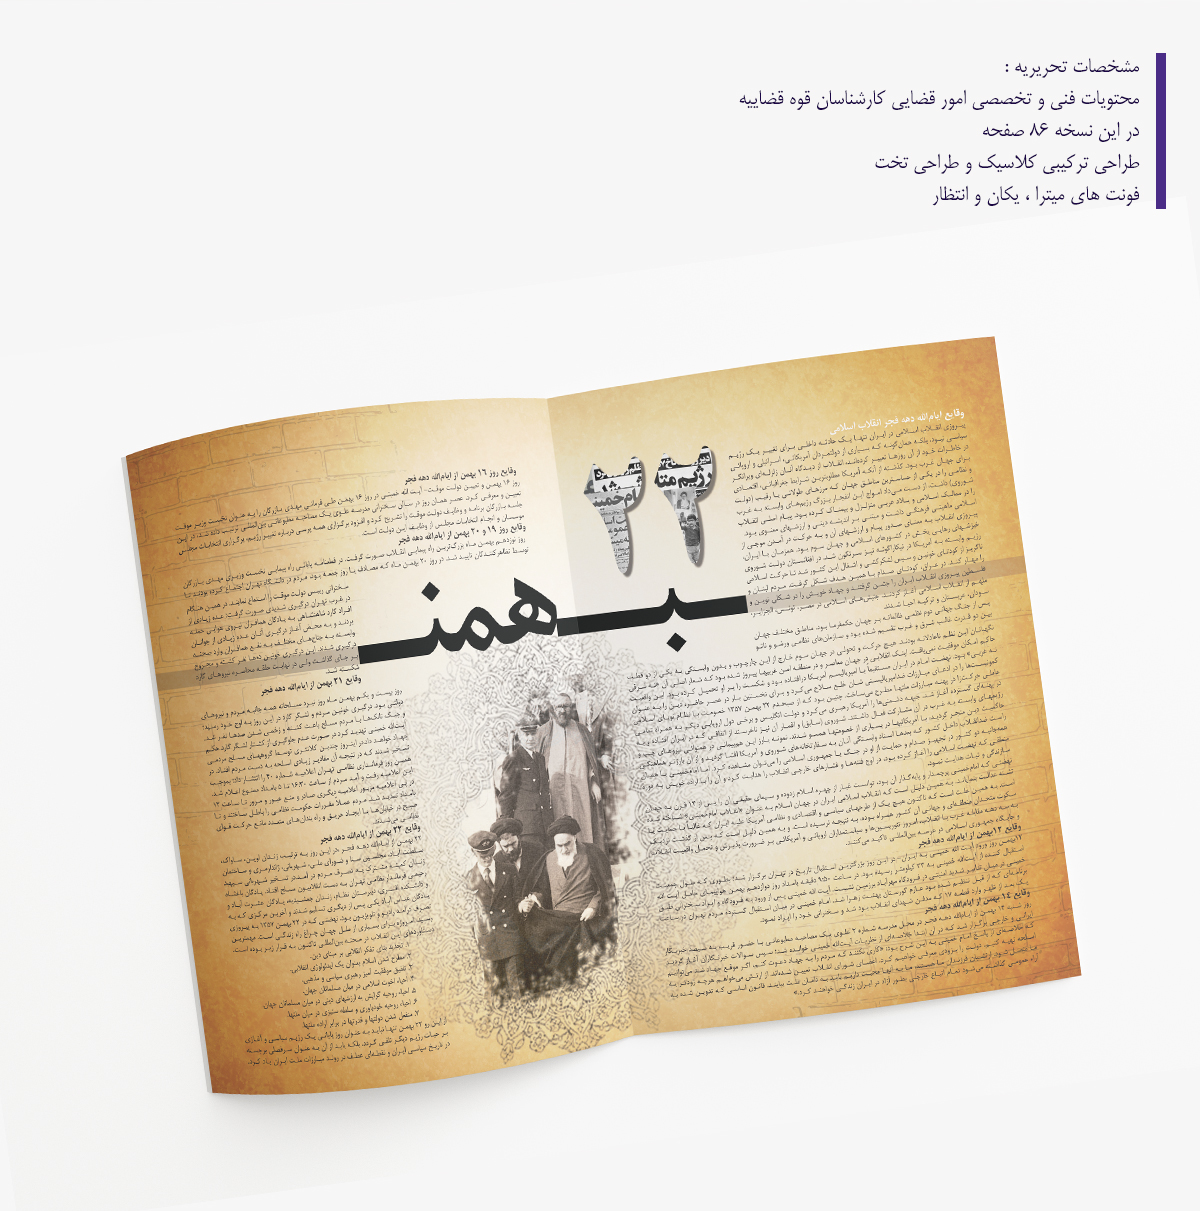 eyestudio Sayid Moghadam magazine persian iranian designer